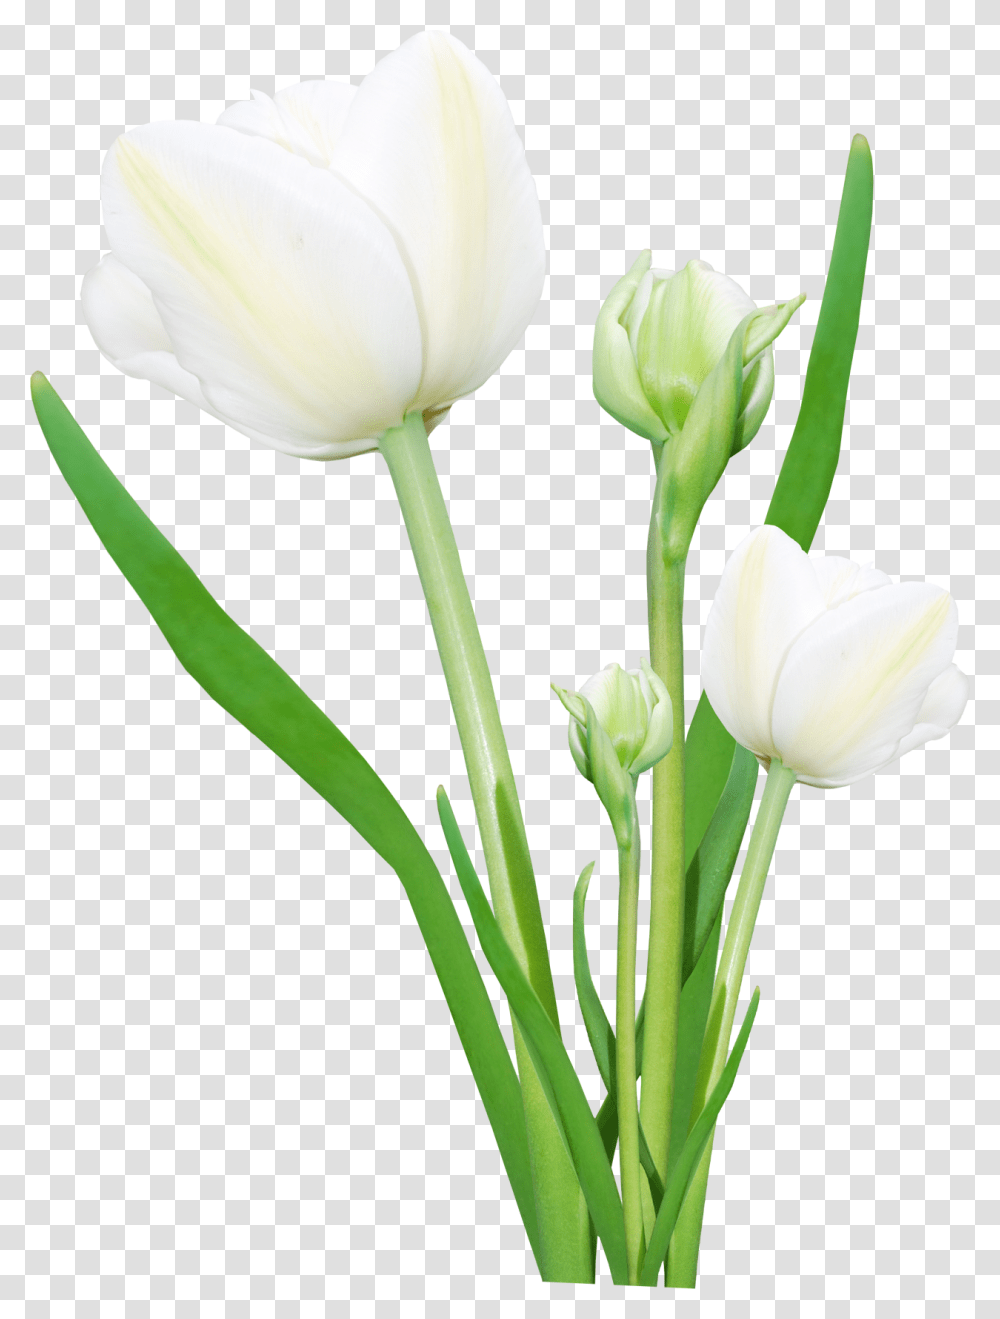 Bouquet Of Flowers Image, Plant, Blossom, Tulip, Petal Transparent Png